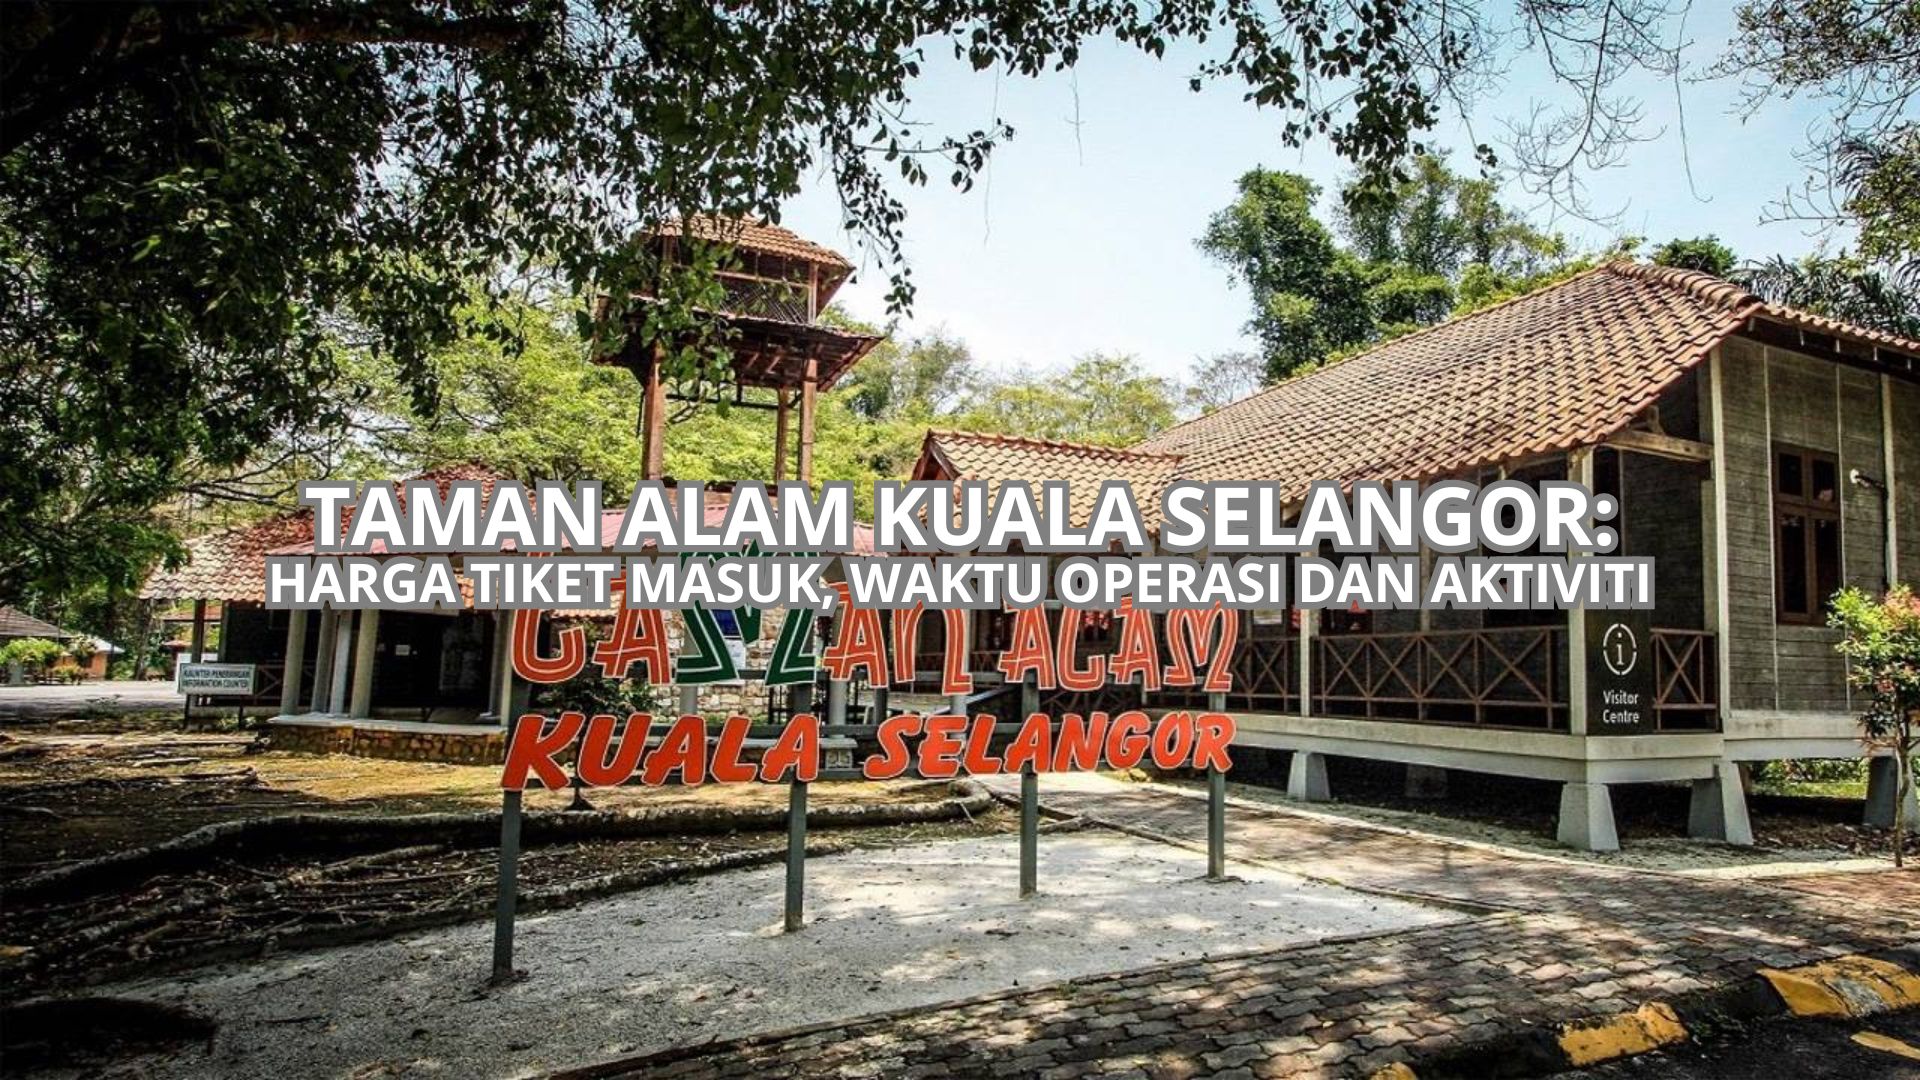 Taman Alam Kuala Selangor Cover